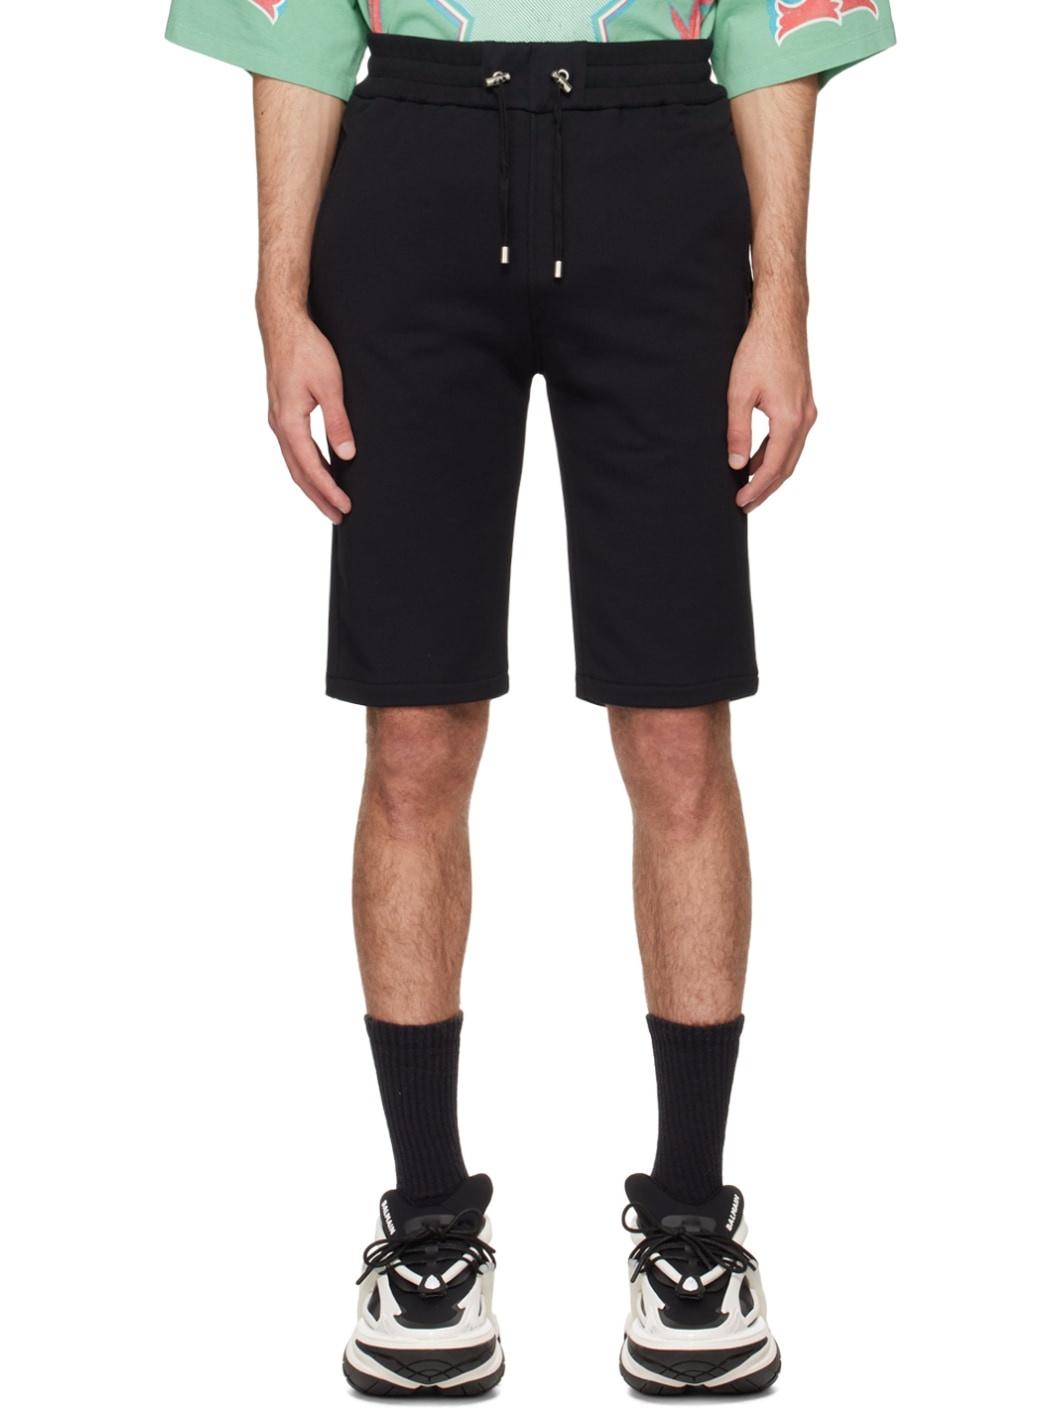 Black Flocked Shorts - 1